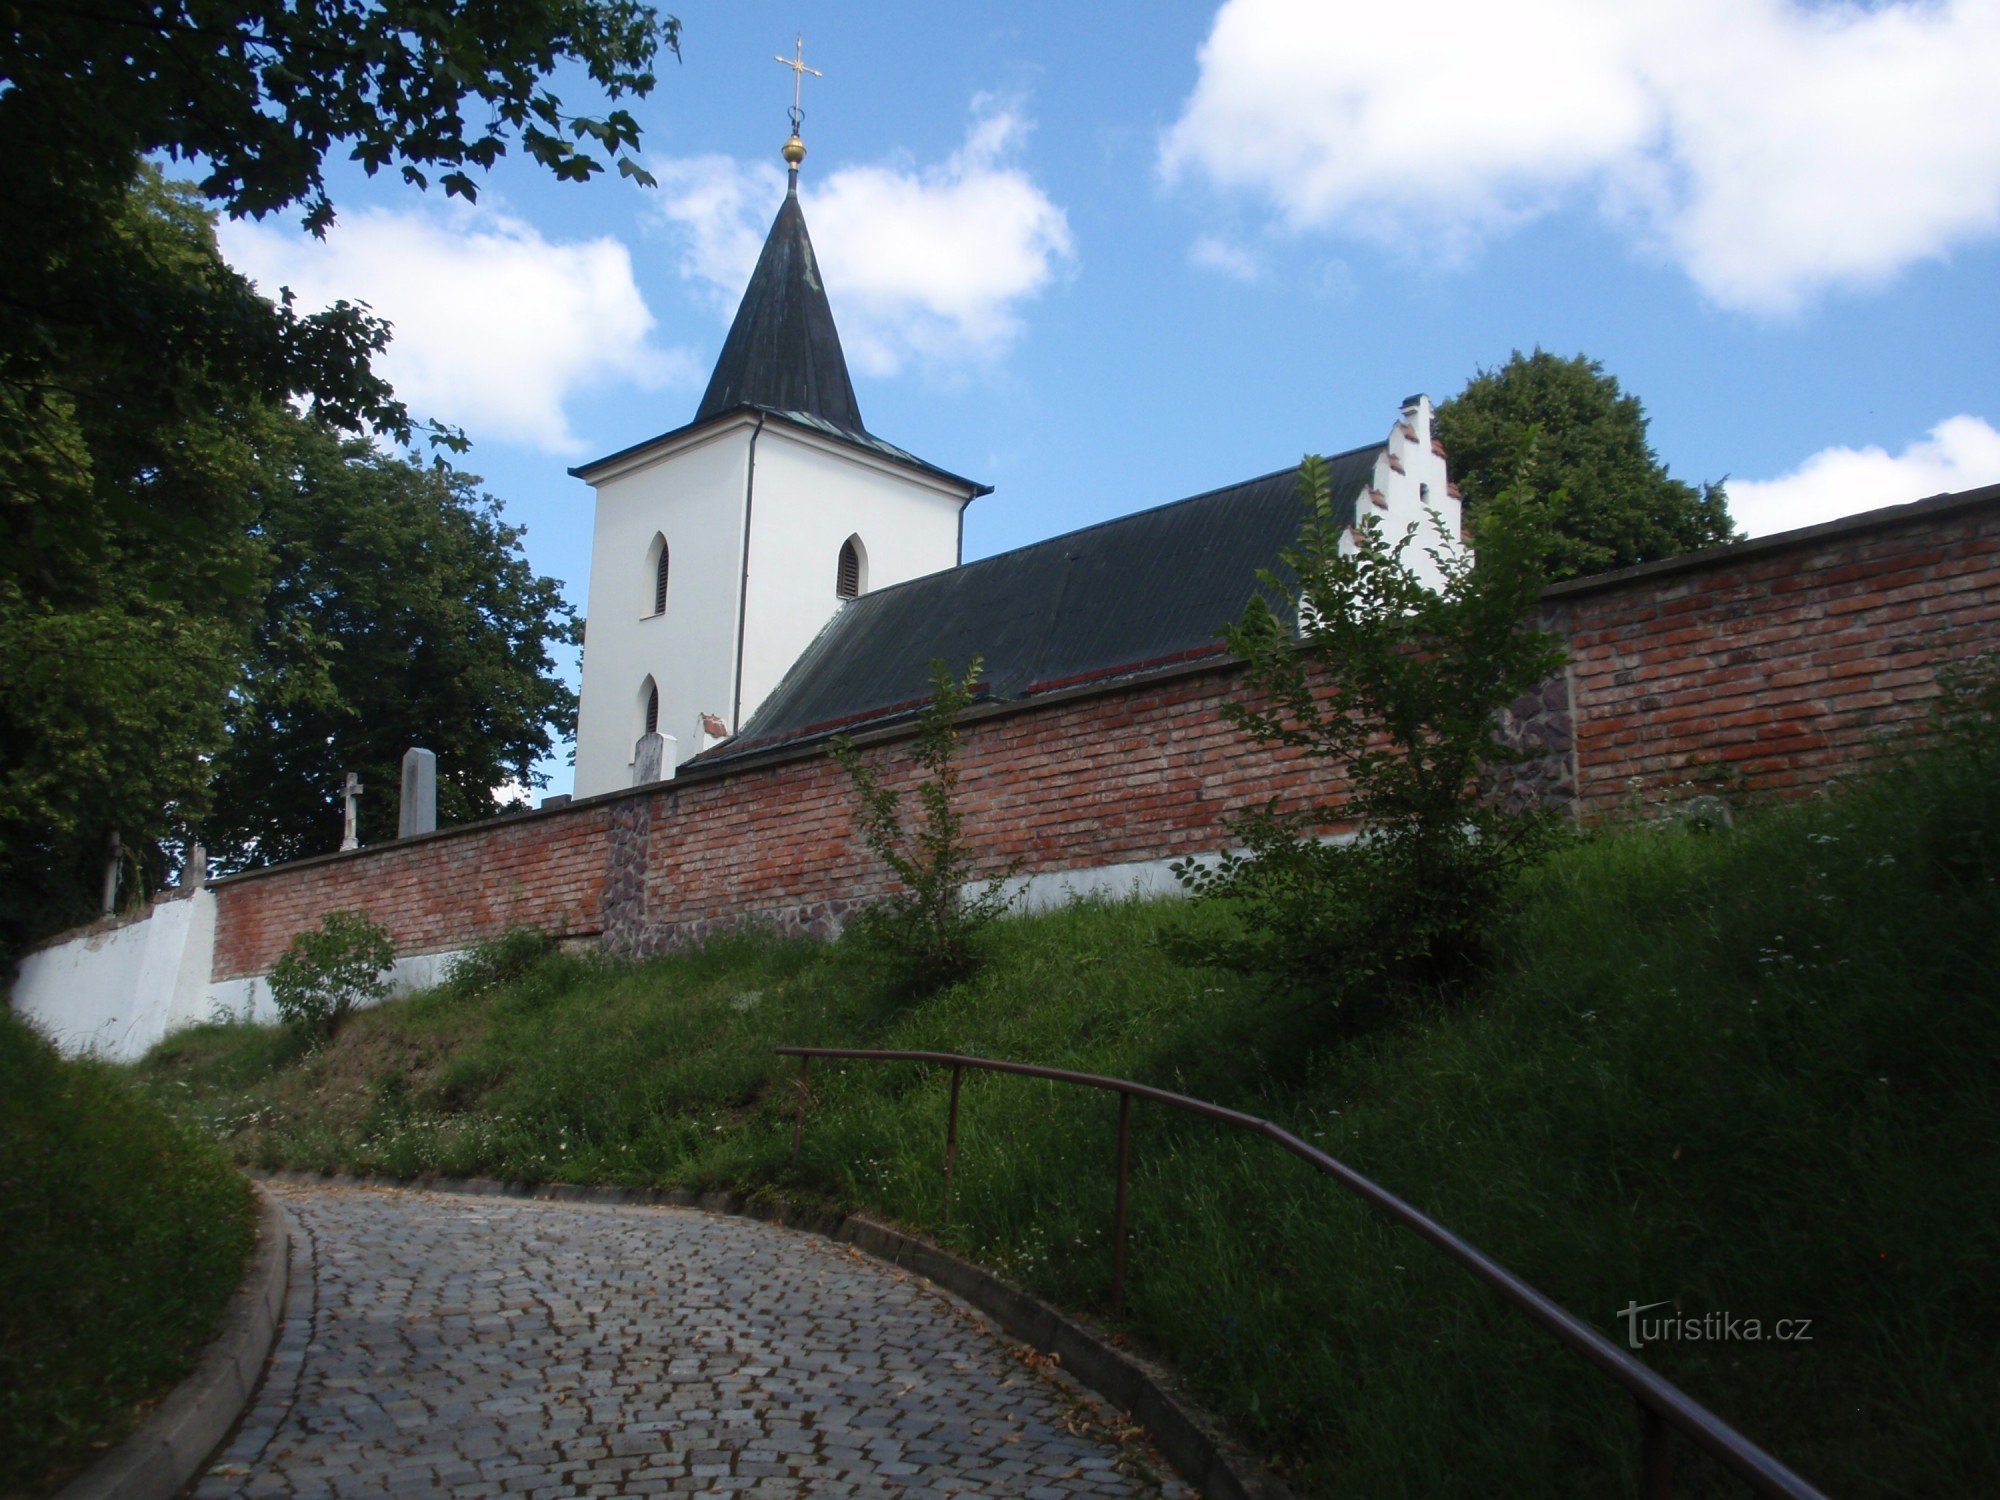 Church of St. Filip and Jakub in Lelekovice